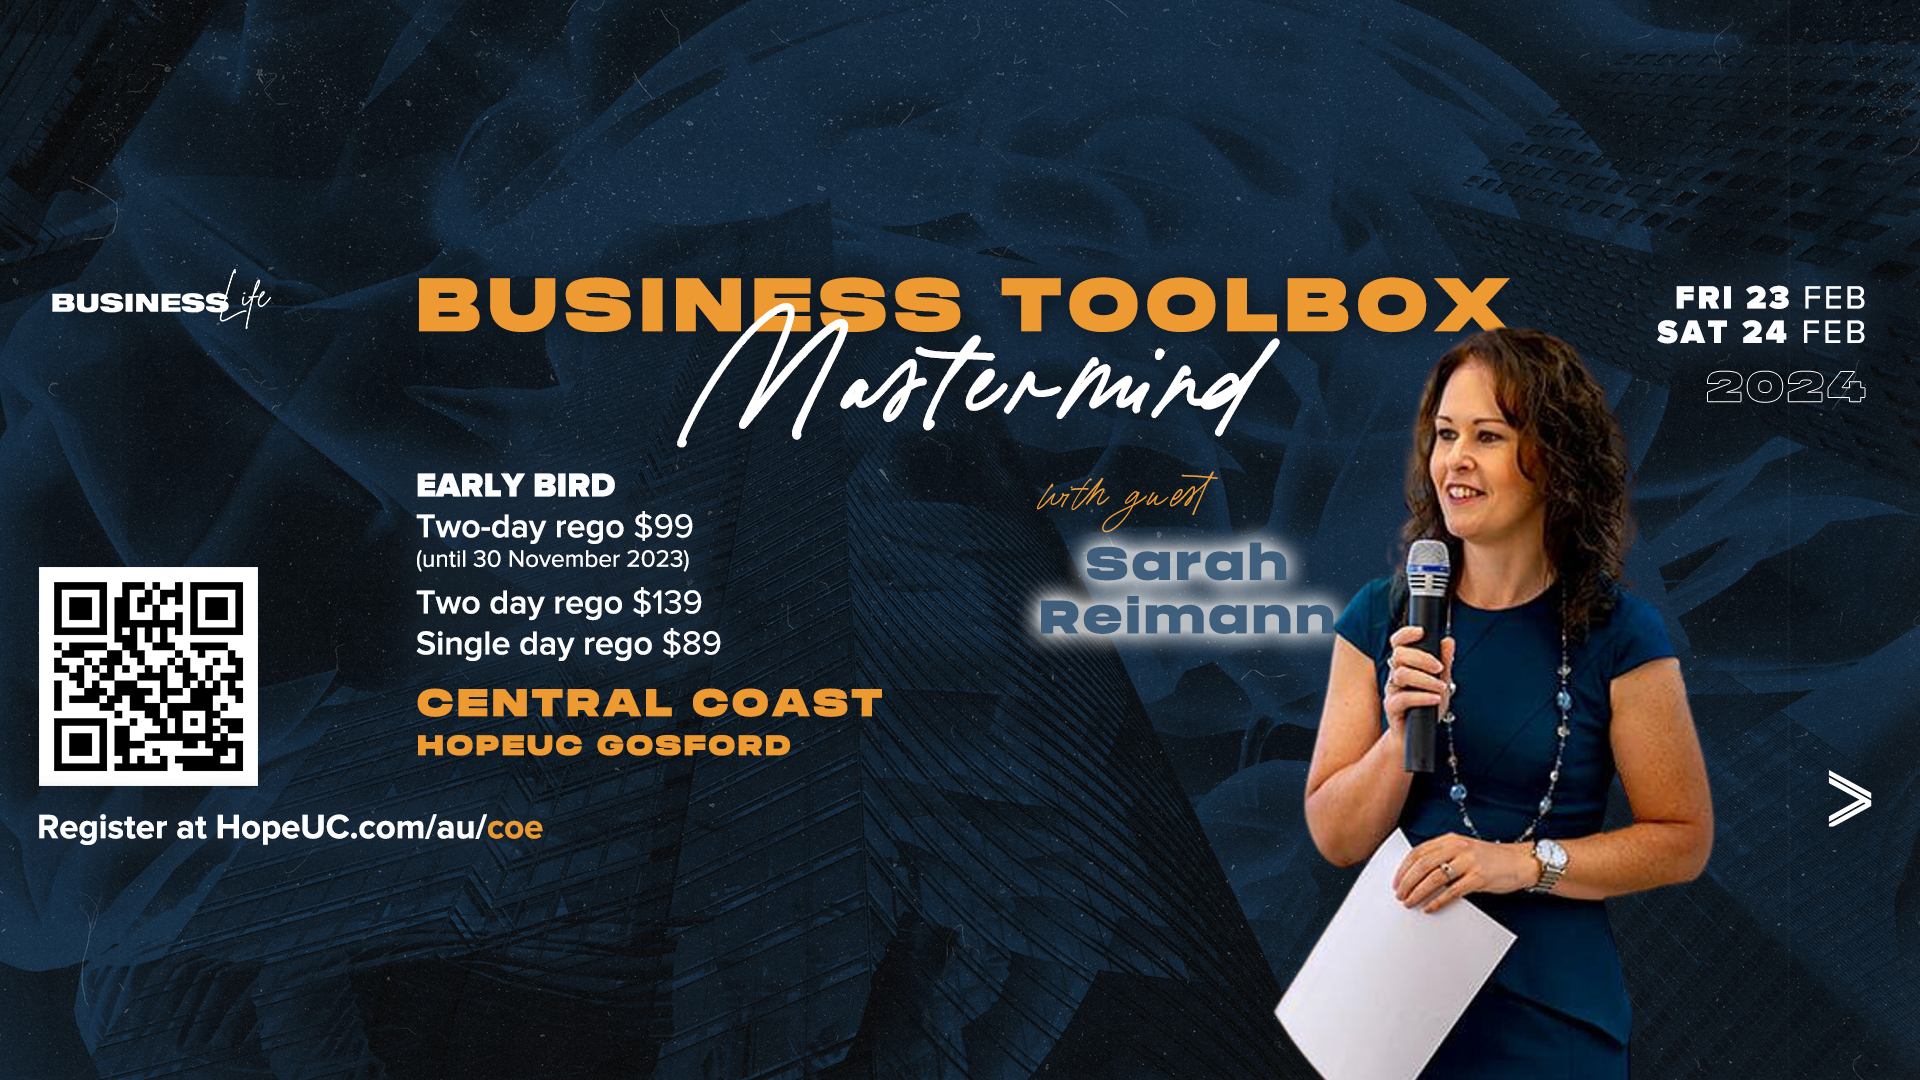 Business Toolbox mastermind